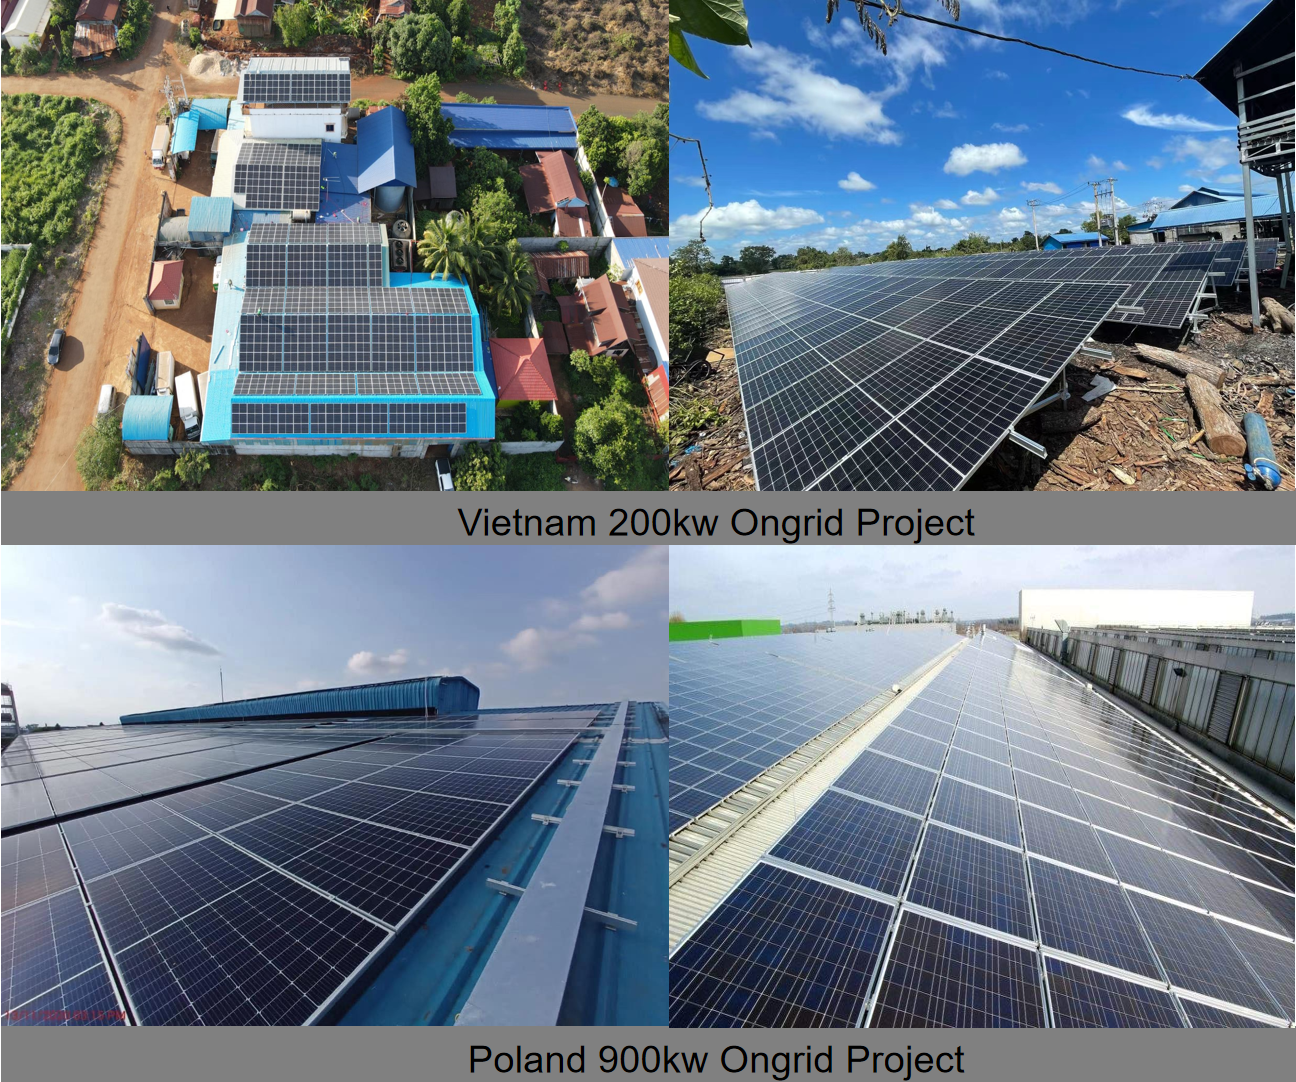  LVTOPSUN High Efficiency 455w Solar Panel Photovoltaic Module Mono Cell 